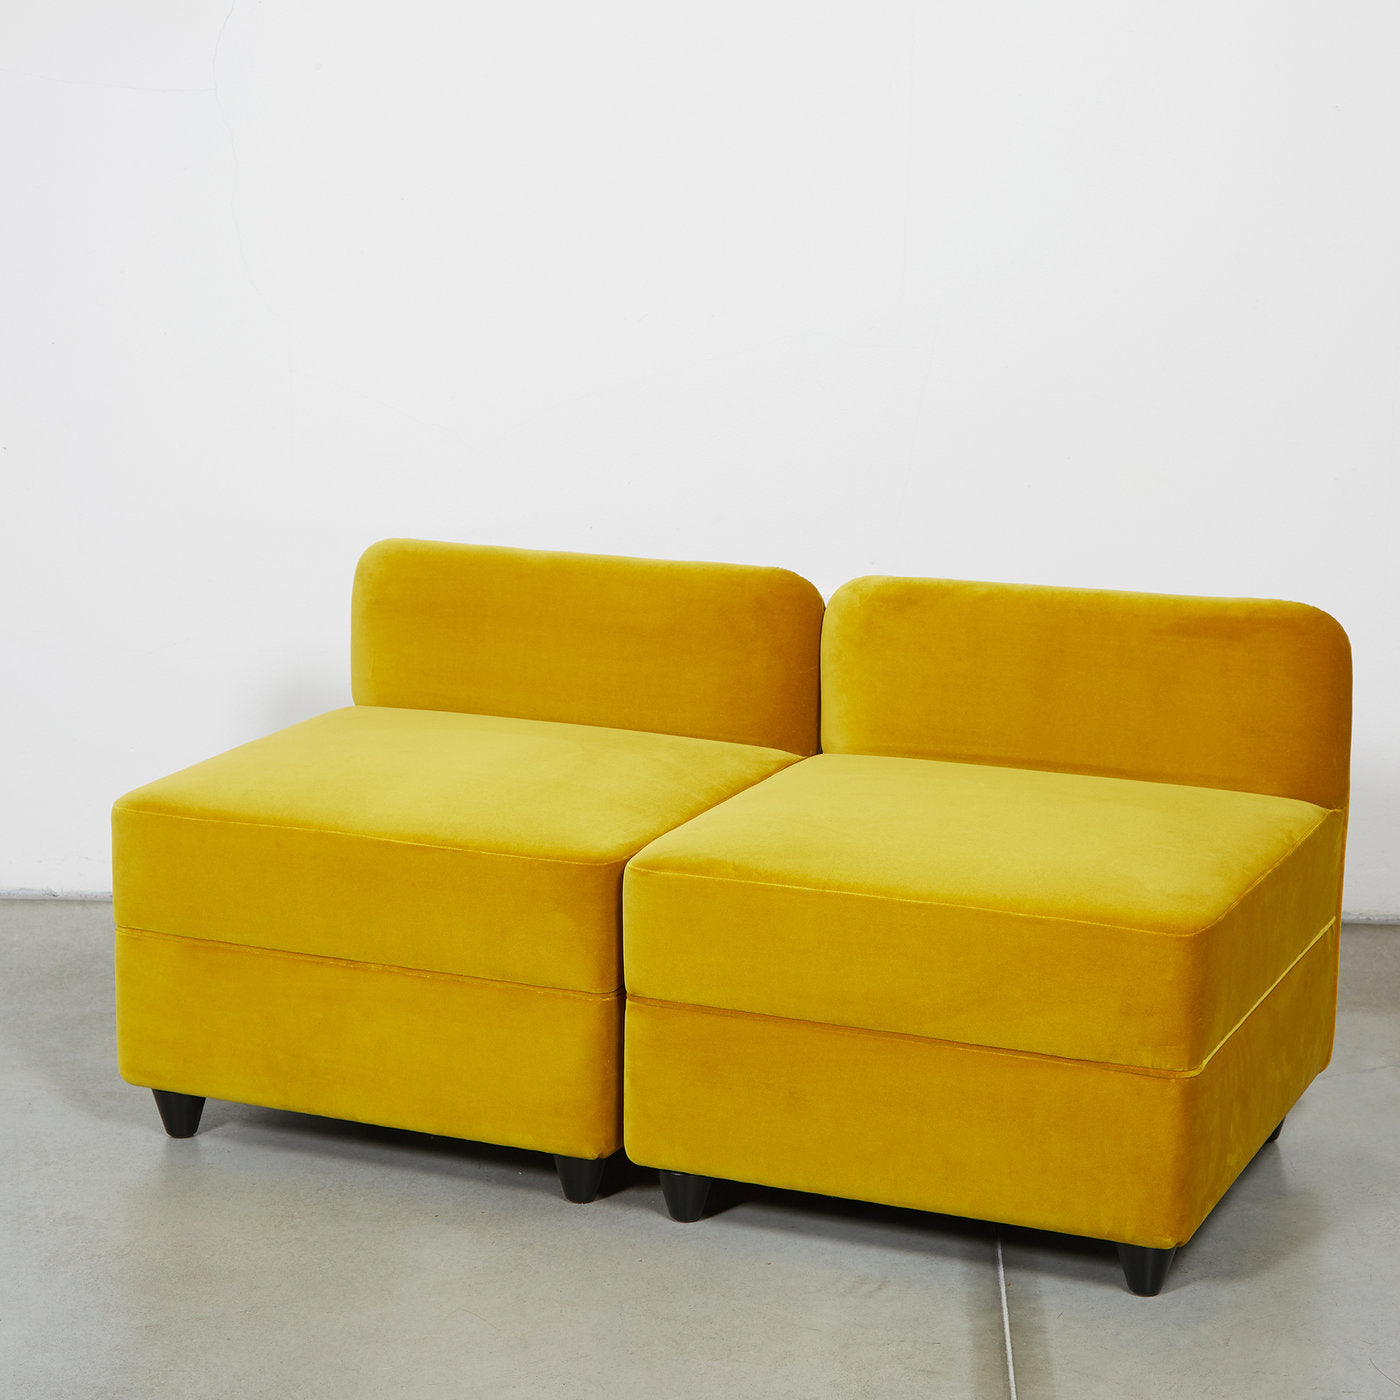 Angolo Yellow Pouf With Backrest by Corrado Corradi Dell'Acqua - Alternative view 2